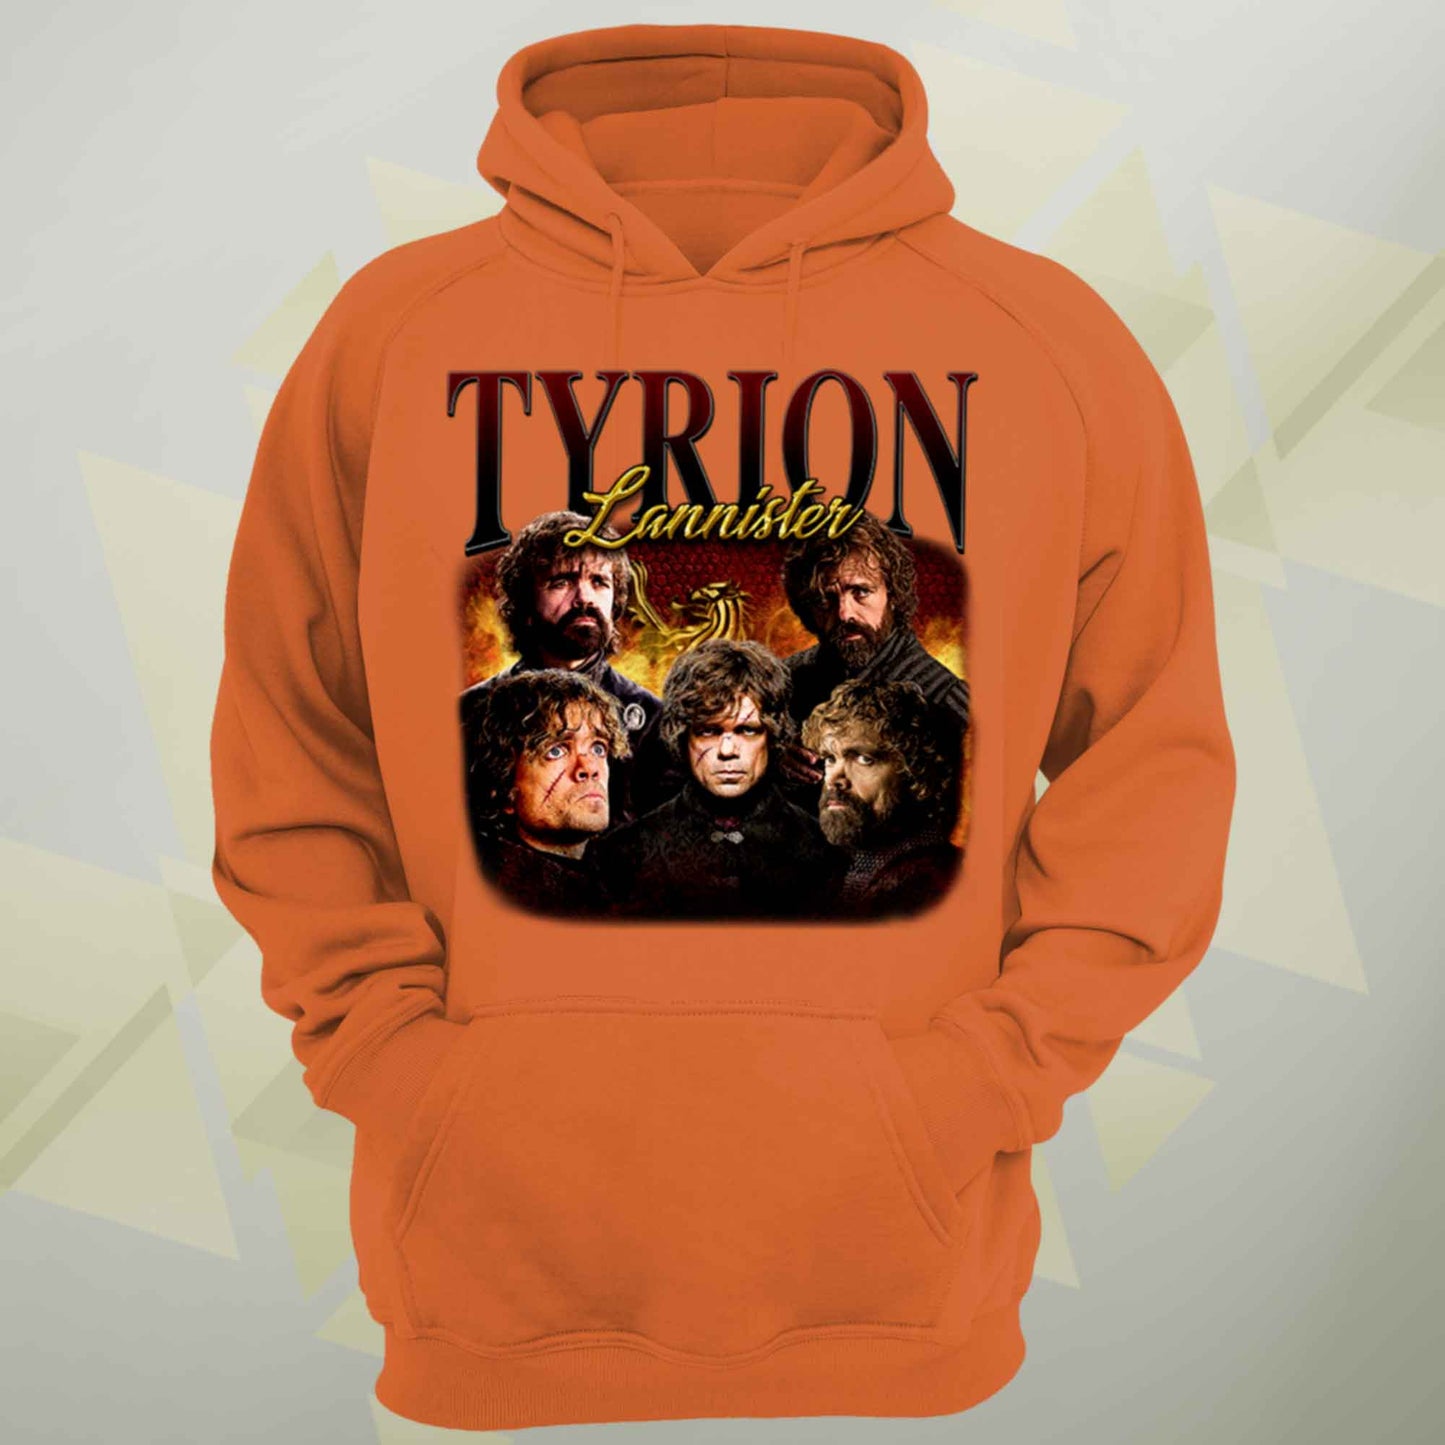 Tyrion Lannister Vintage Unisex Hoodie